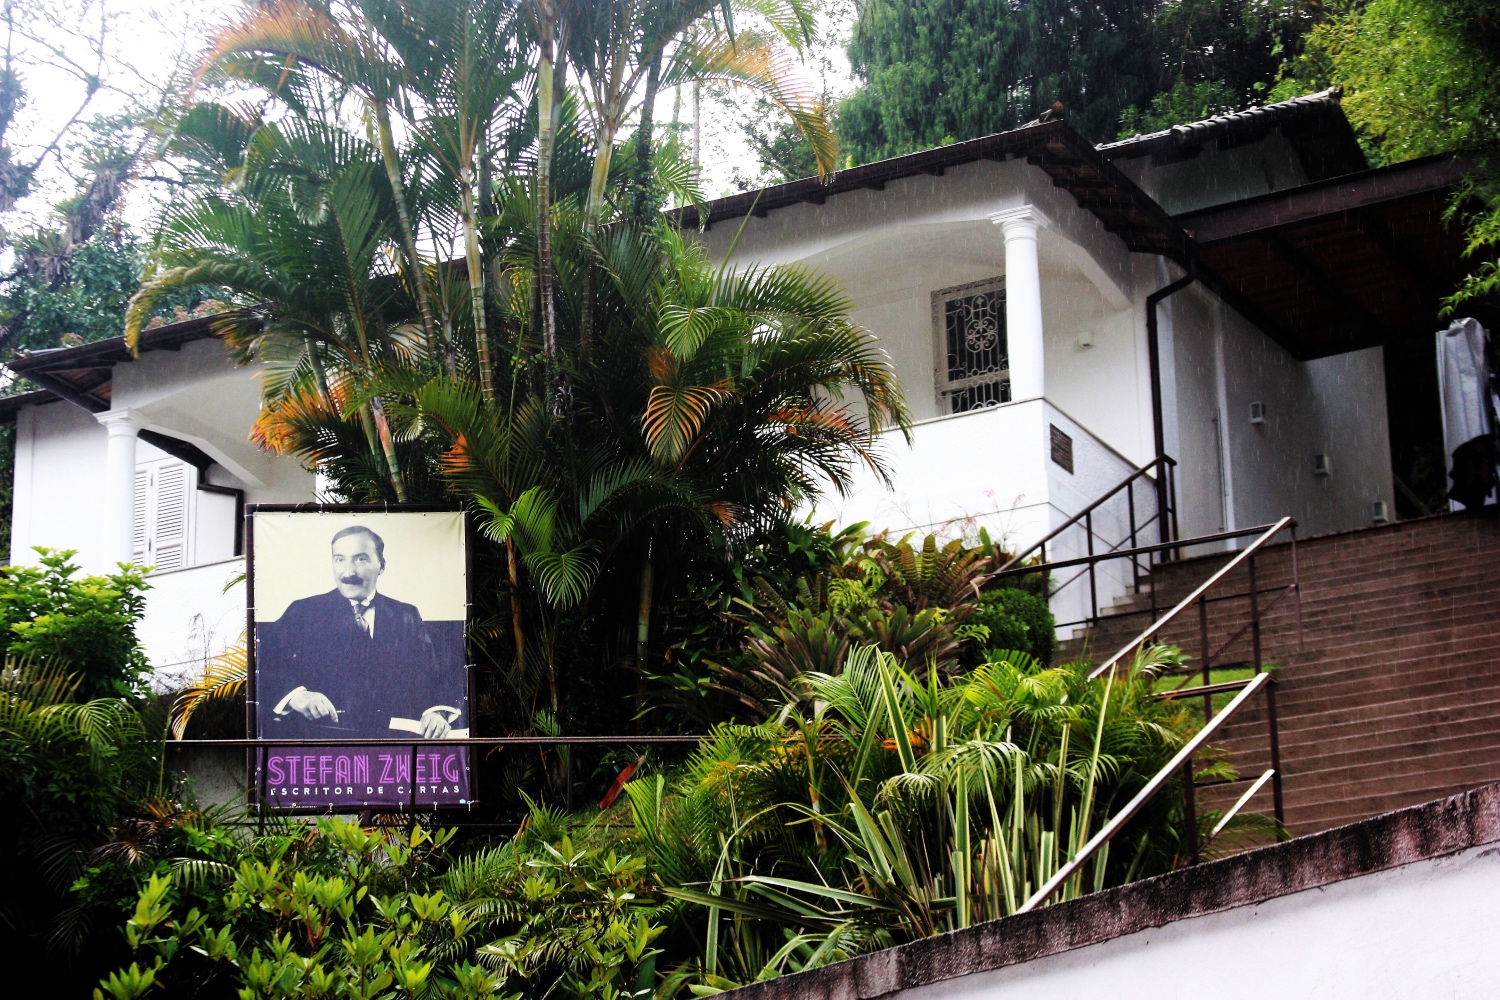 Casa Stefan Zweig - Petrópolis